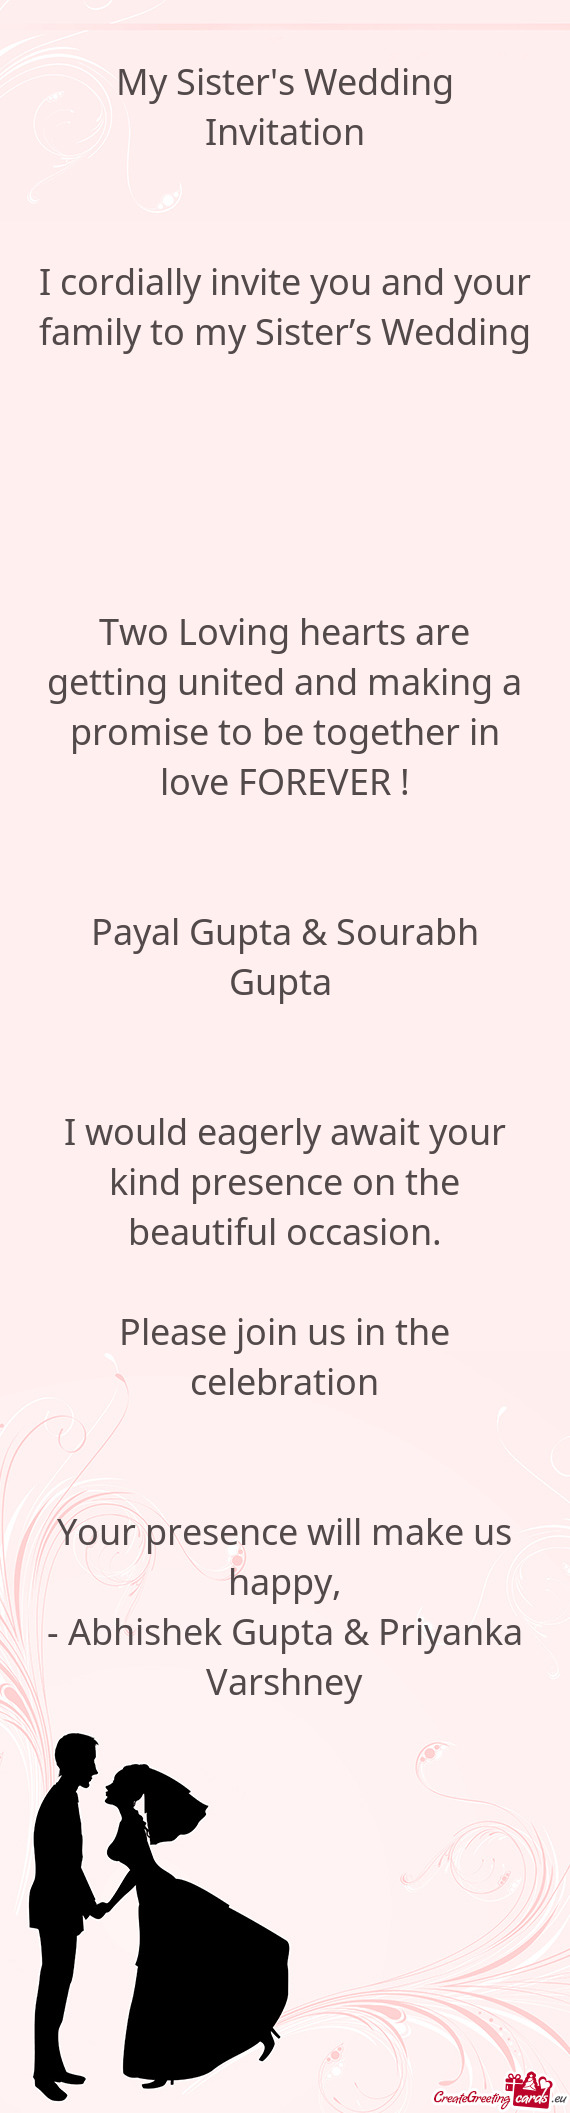 Payal Gupta & Sourabh Gupta